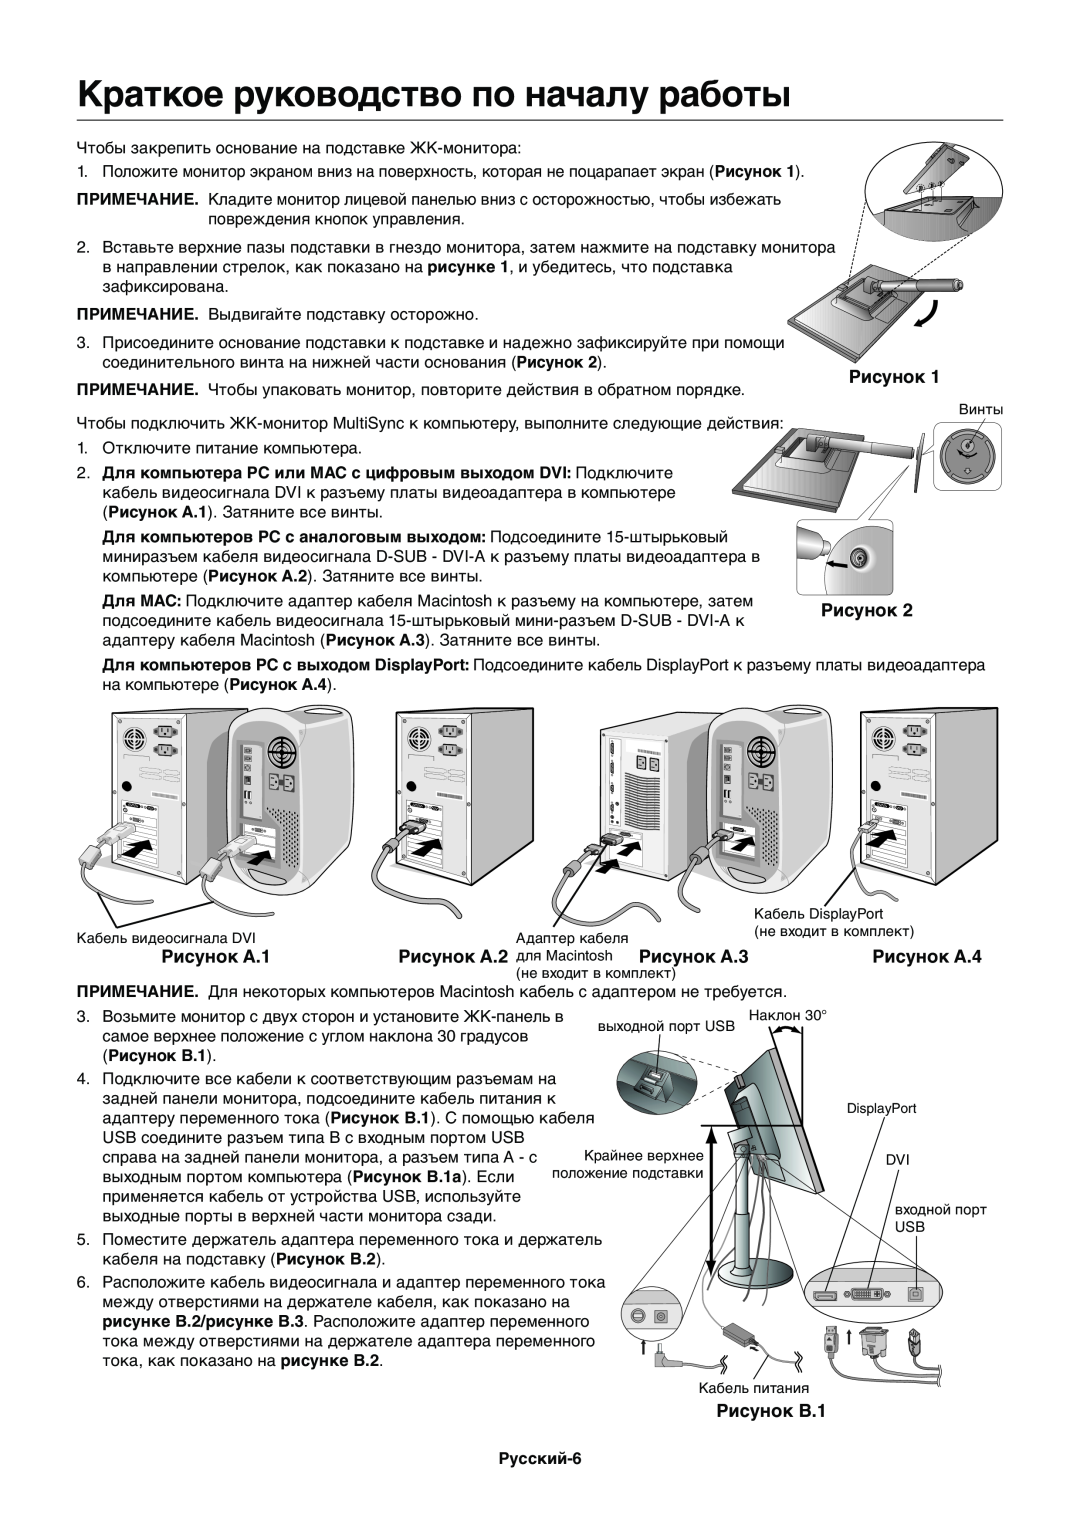 NEC EX231W manual Краткое руководство по началу работы, Рисунок A.1, Рисунок A.2 для Macintosh Рисунок A.3, Рисунок A.4 